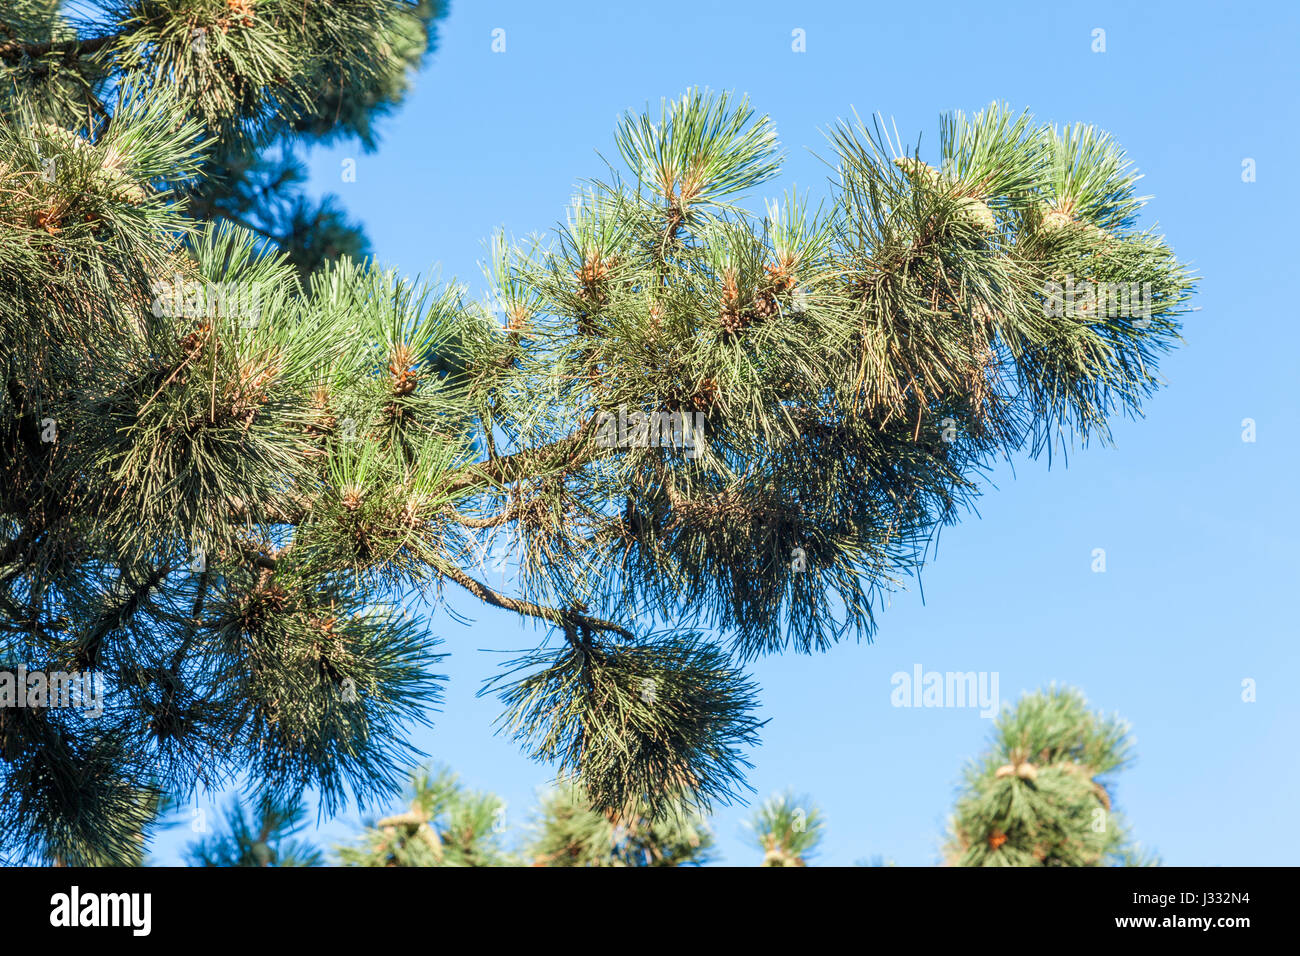 Les aiguilles et la direction générale d'un pin sylvestre (Pinus sylvestris), England, UK Banque D'Images